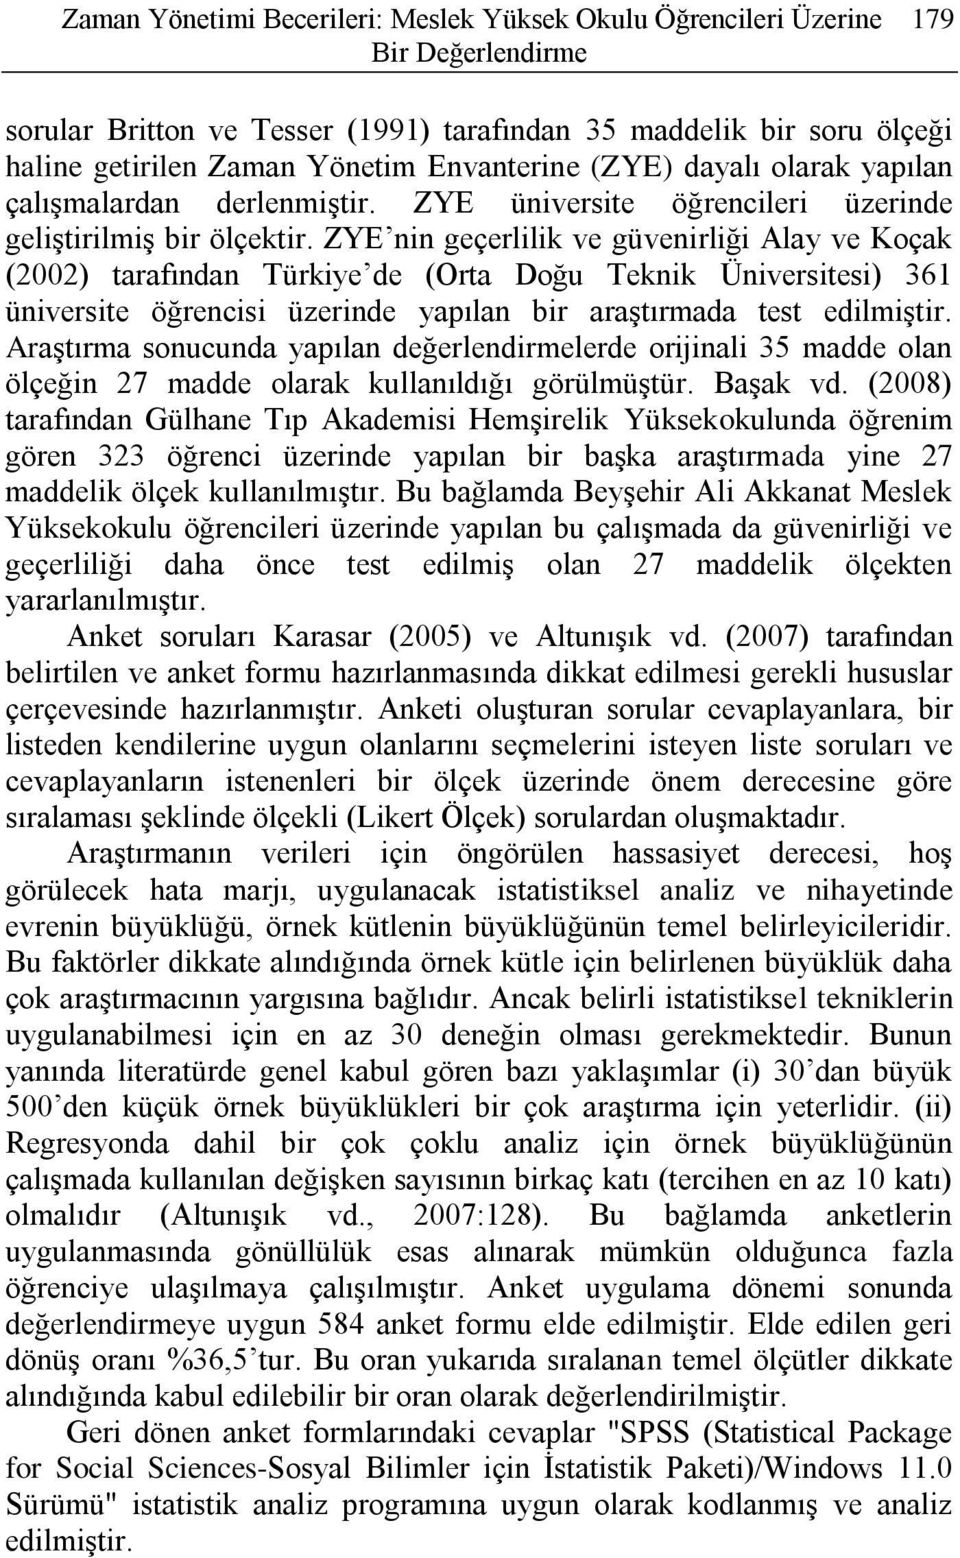 ZYE nin geçerlilik ve güvenirliği Alay ve Koçak (2002) tarafından Türkiye de (Orta Doğu Teknik Üniversitesi) 361 üniversite öğrencisi üzerinde yapılan bir araştırmada test edilmiştir.